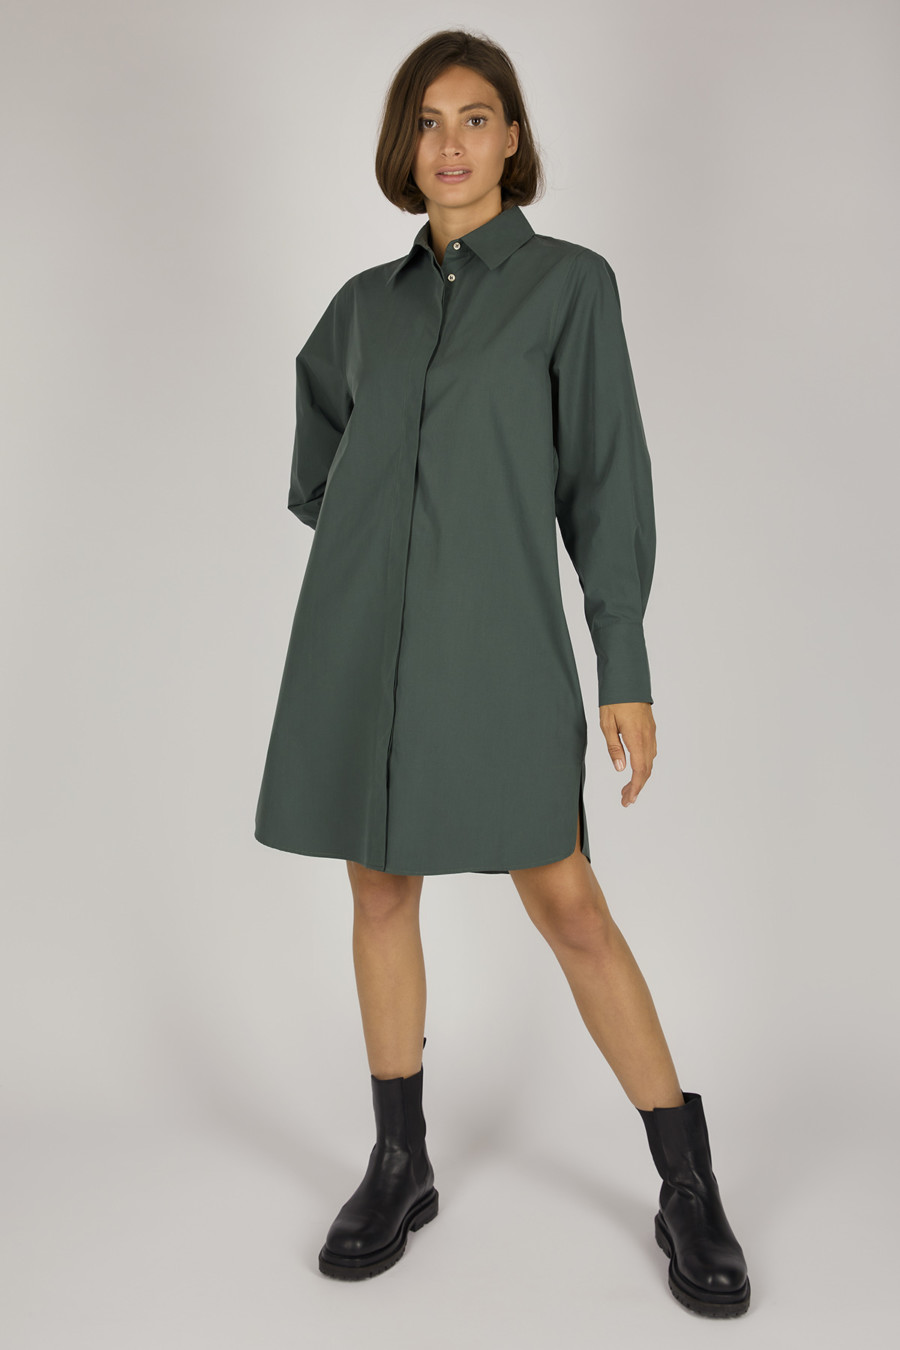 LORA DRESS – Oversize shirt blouse dress – Color: Moss